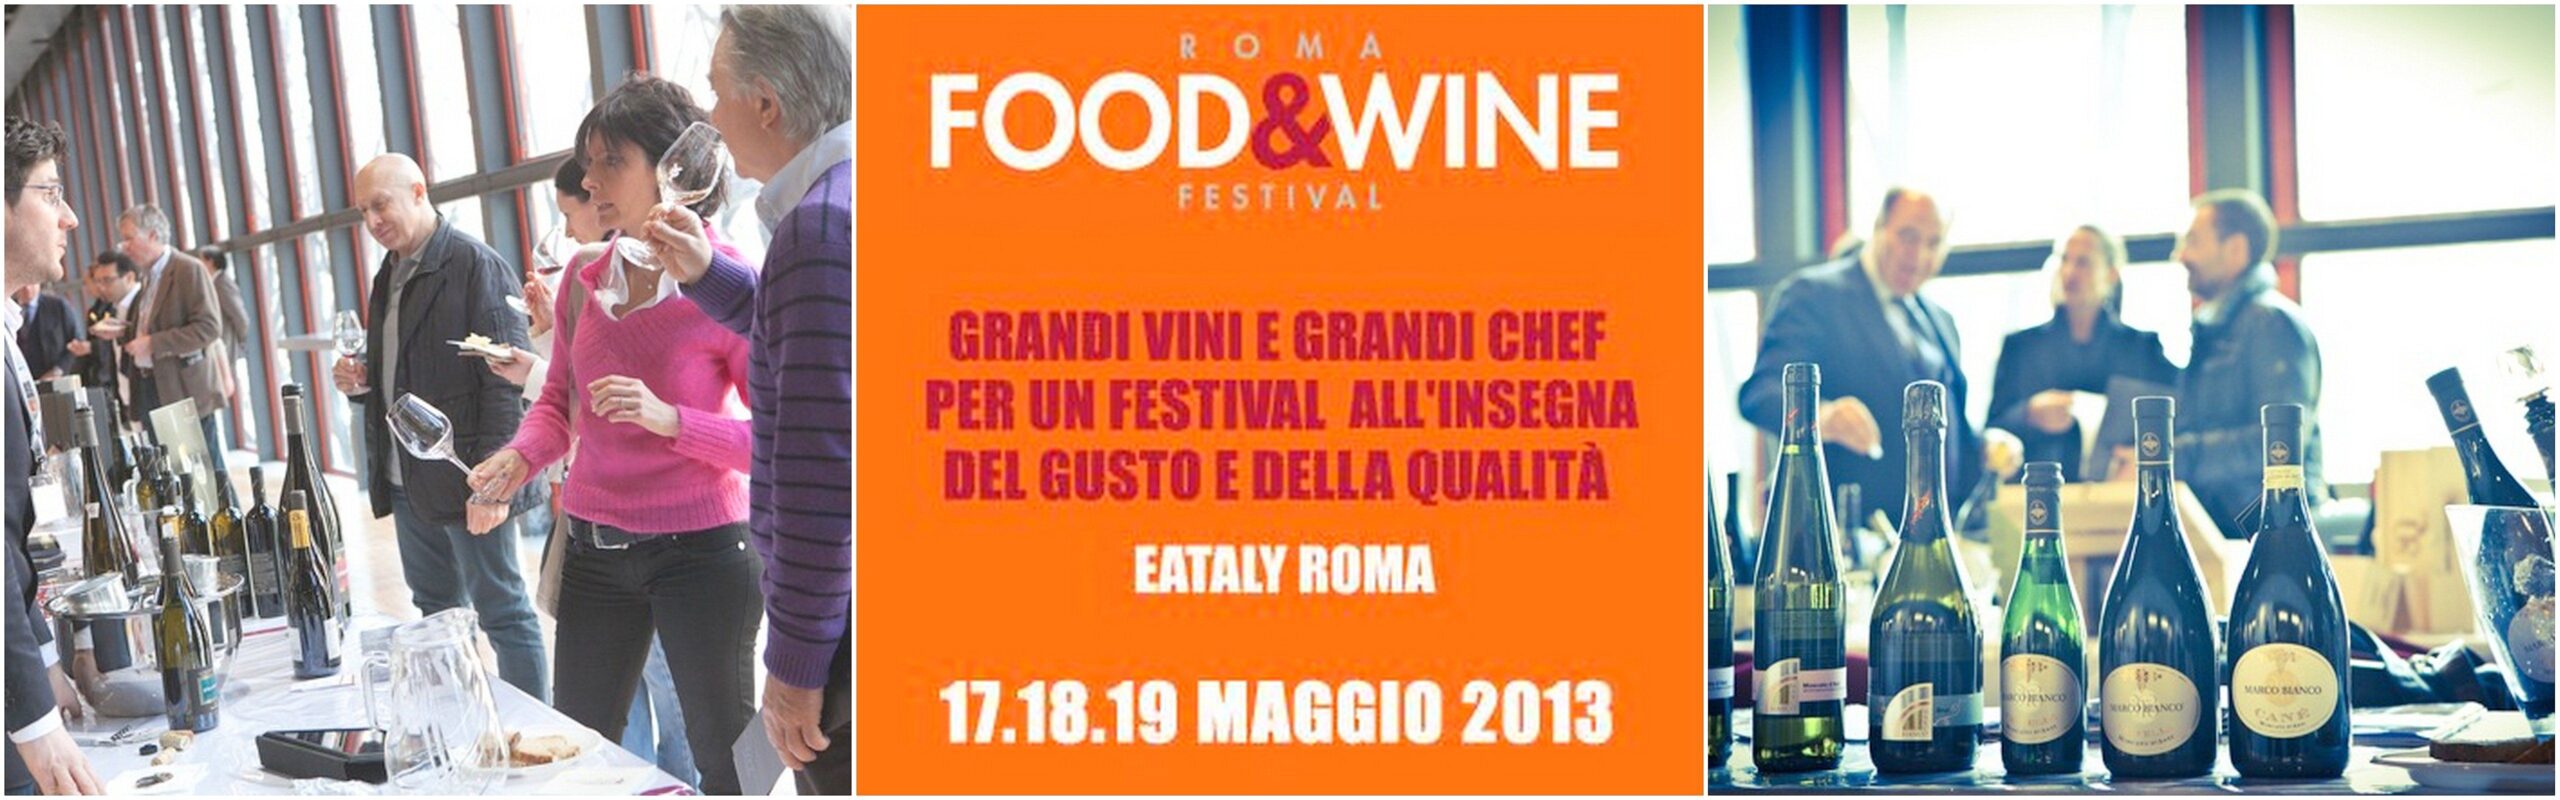 Roma Food&Wine Festival, all'insegna del gusto e della qualità